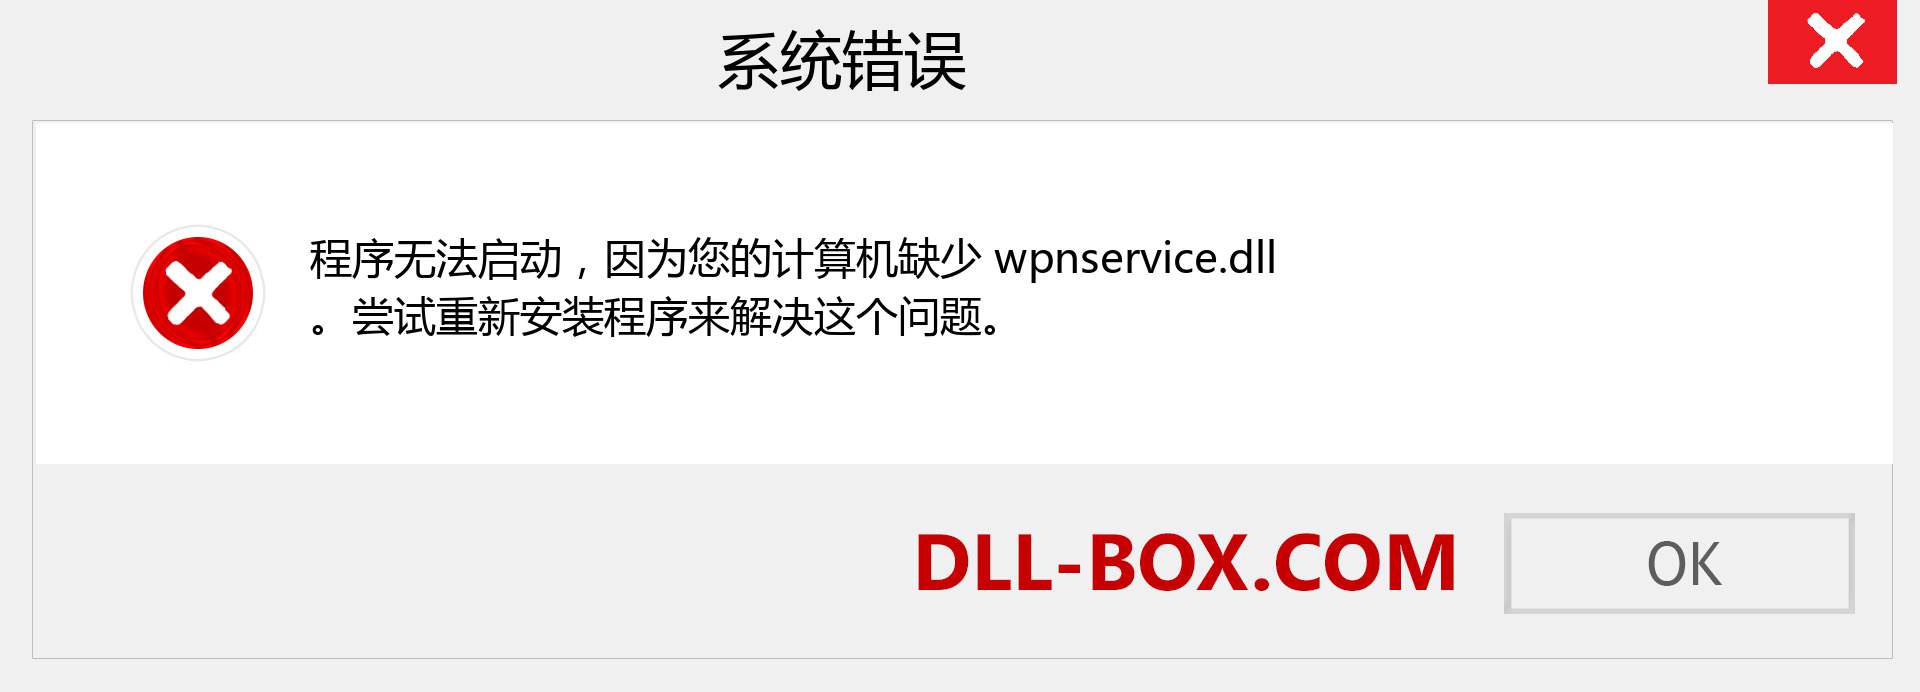 wpnservice.dll 文件丢失？。 适用于 Windows 7、8、10 的下载 - 修复 Windows、照片、图像上的 wpnservice dll 丢失错误